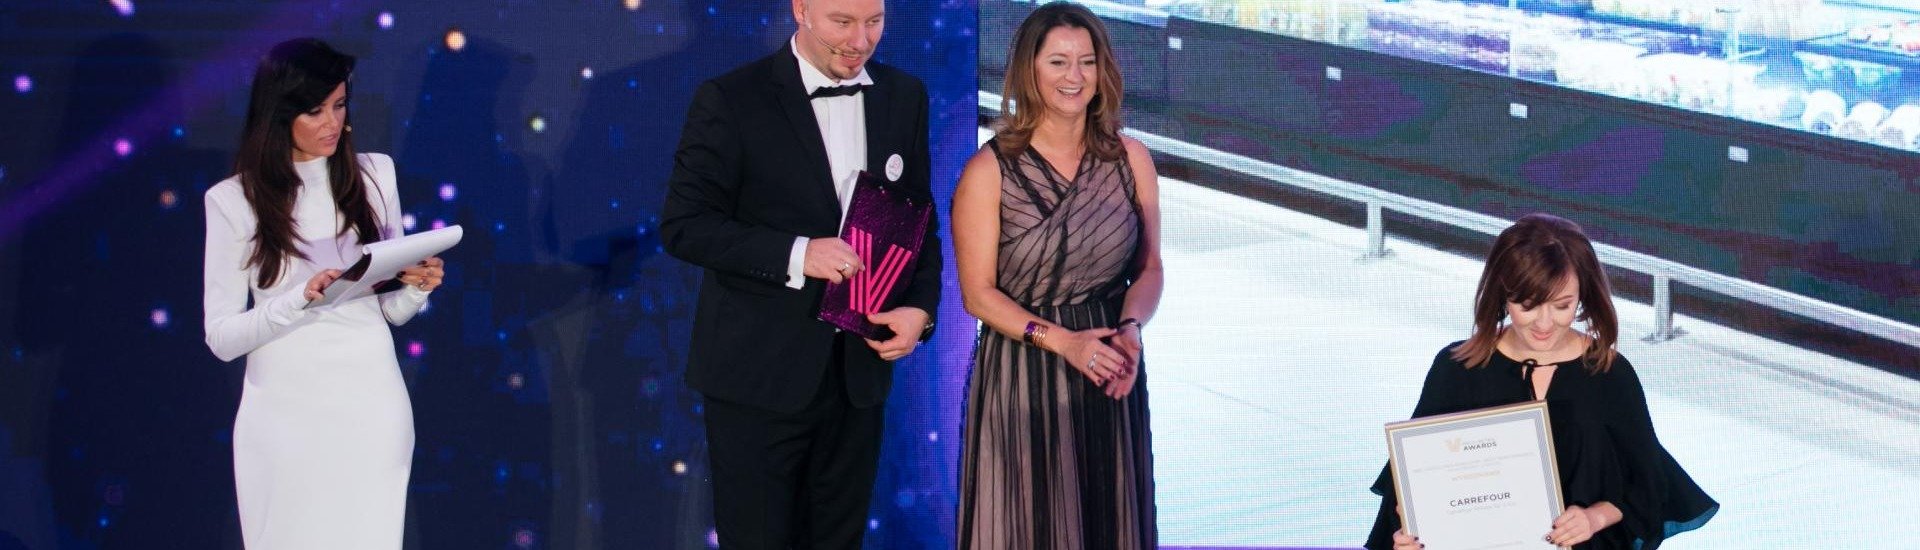 Carrefour wyróżniony w konkursie PRCH Retail Awards